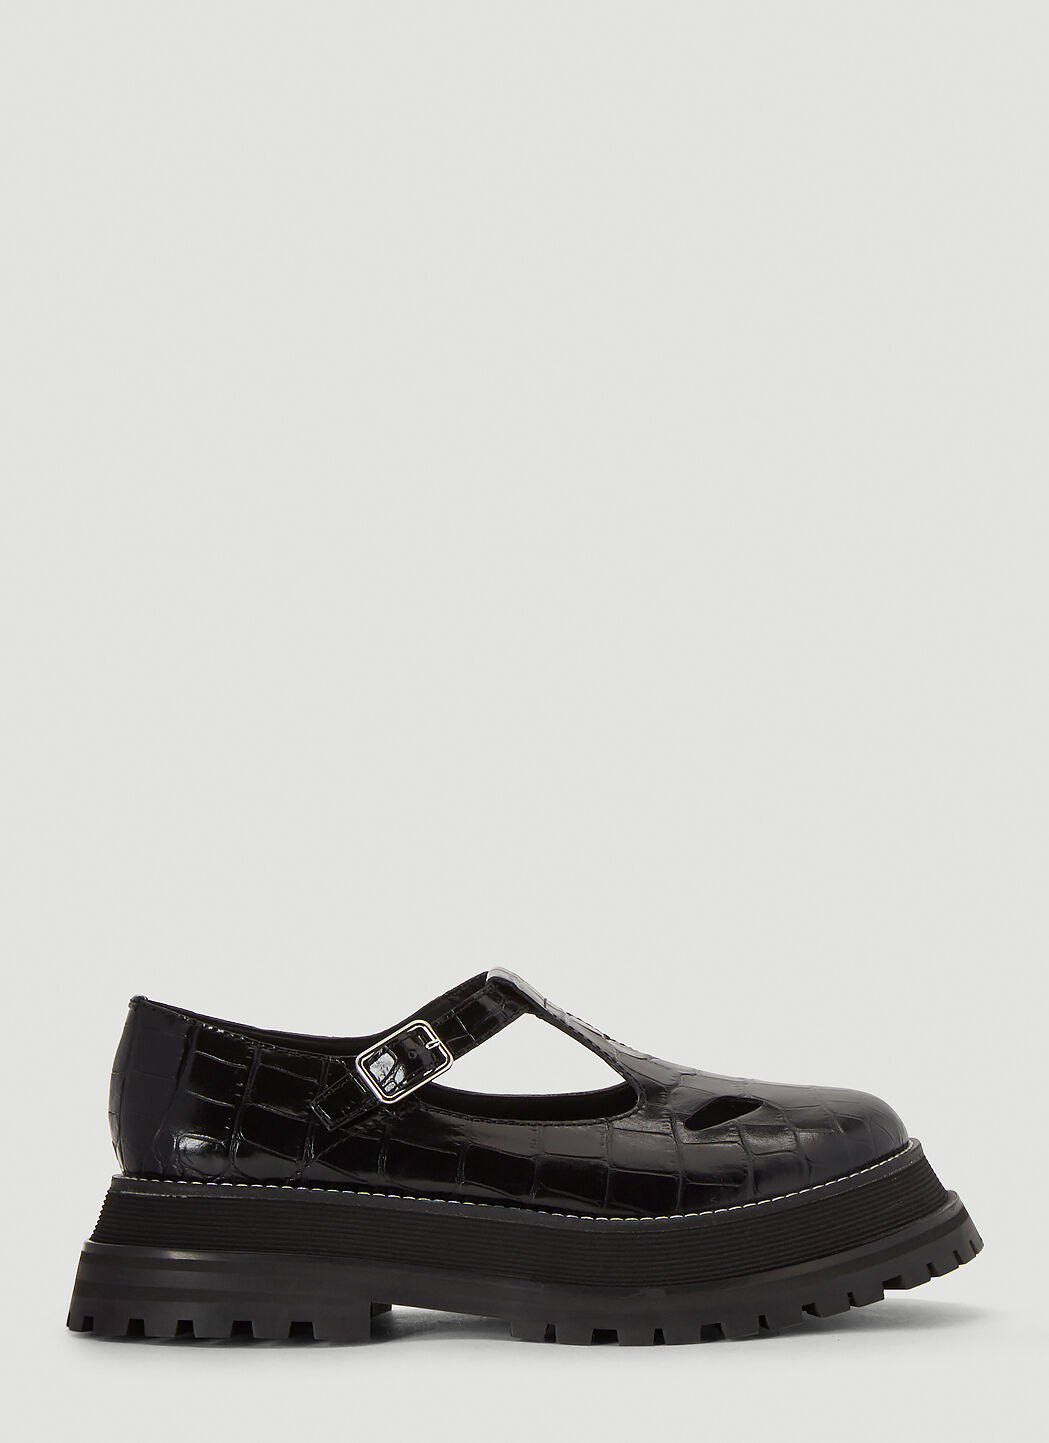 Saint Laurent Embossed Leather Mary Jane Shoes Black sla0235026